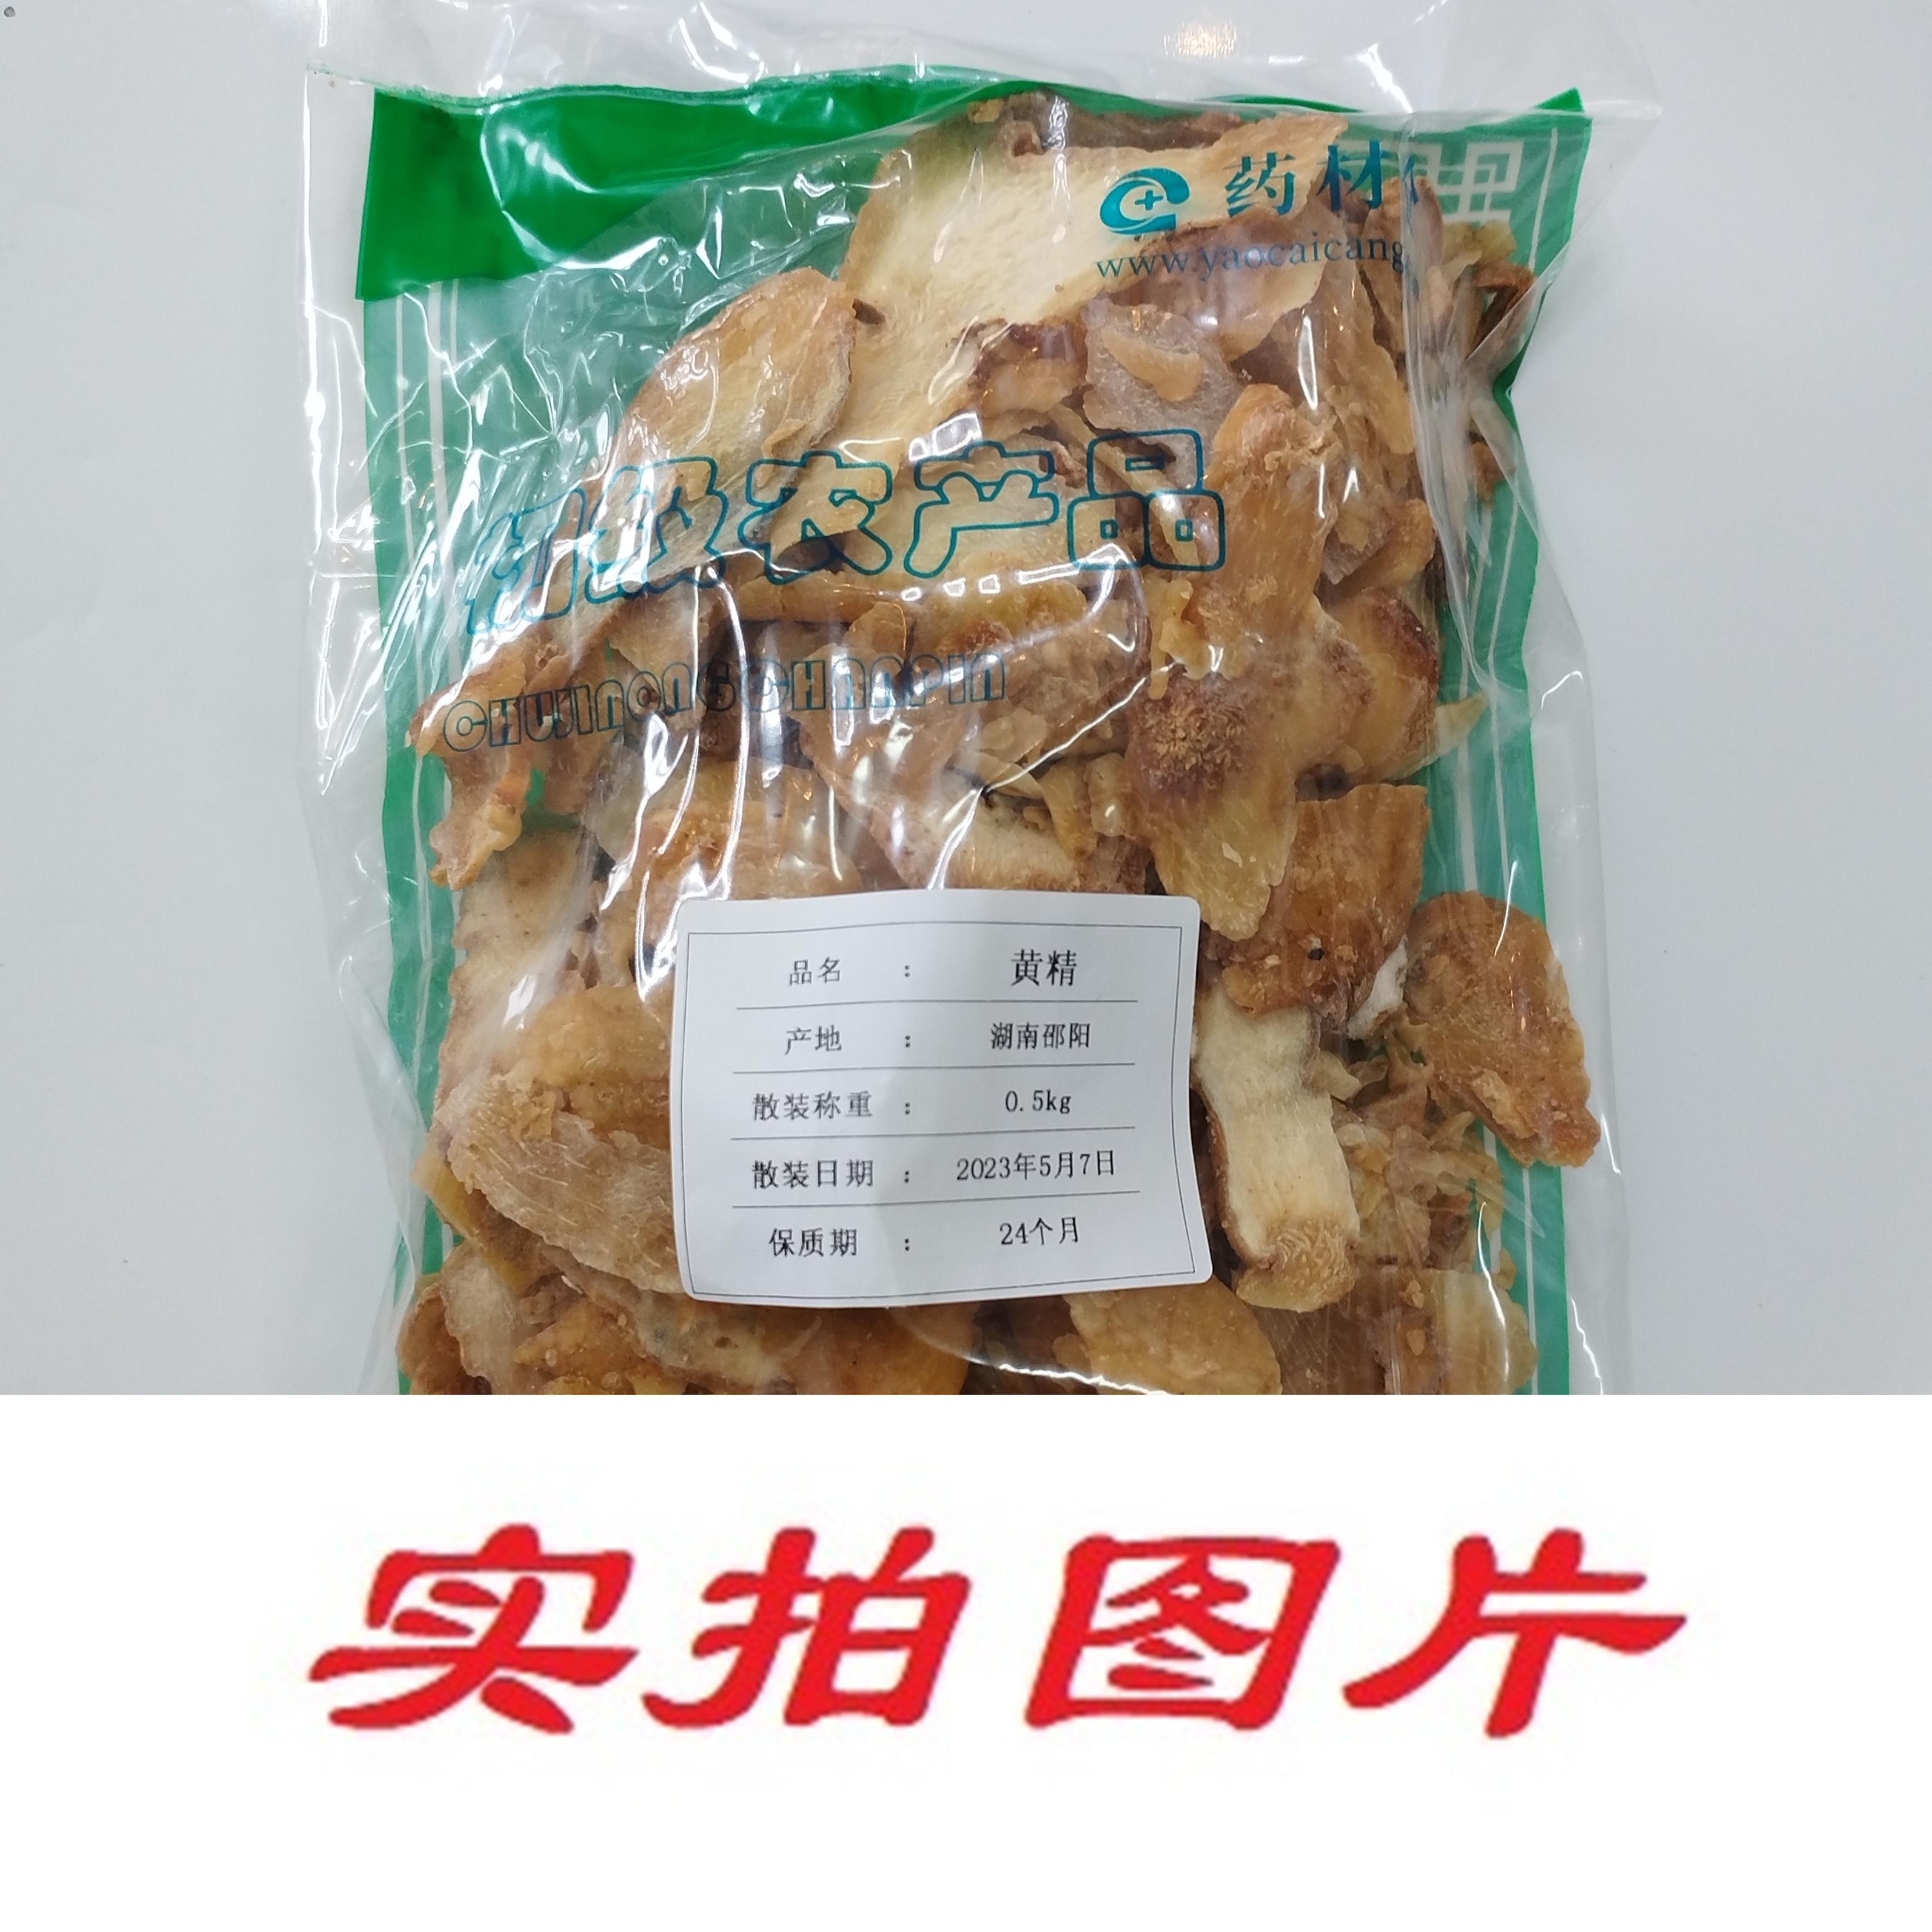 【】黄精0.5kg-农副产品